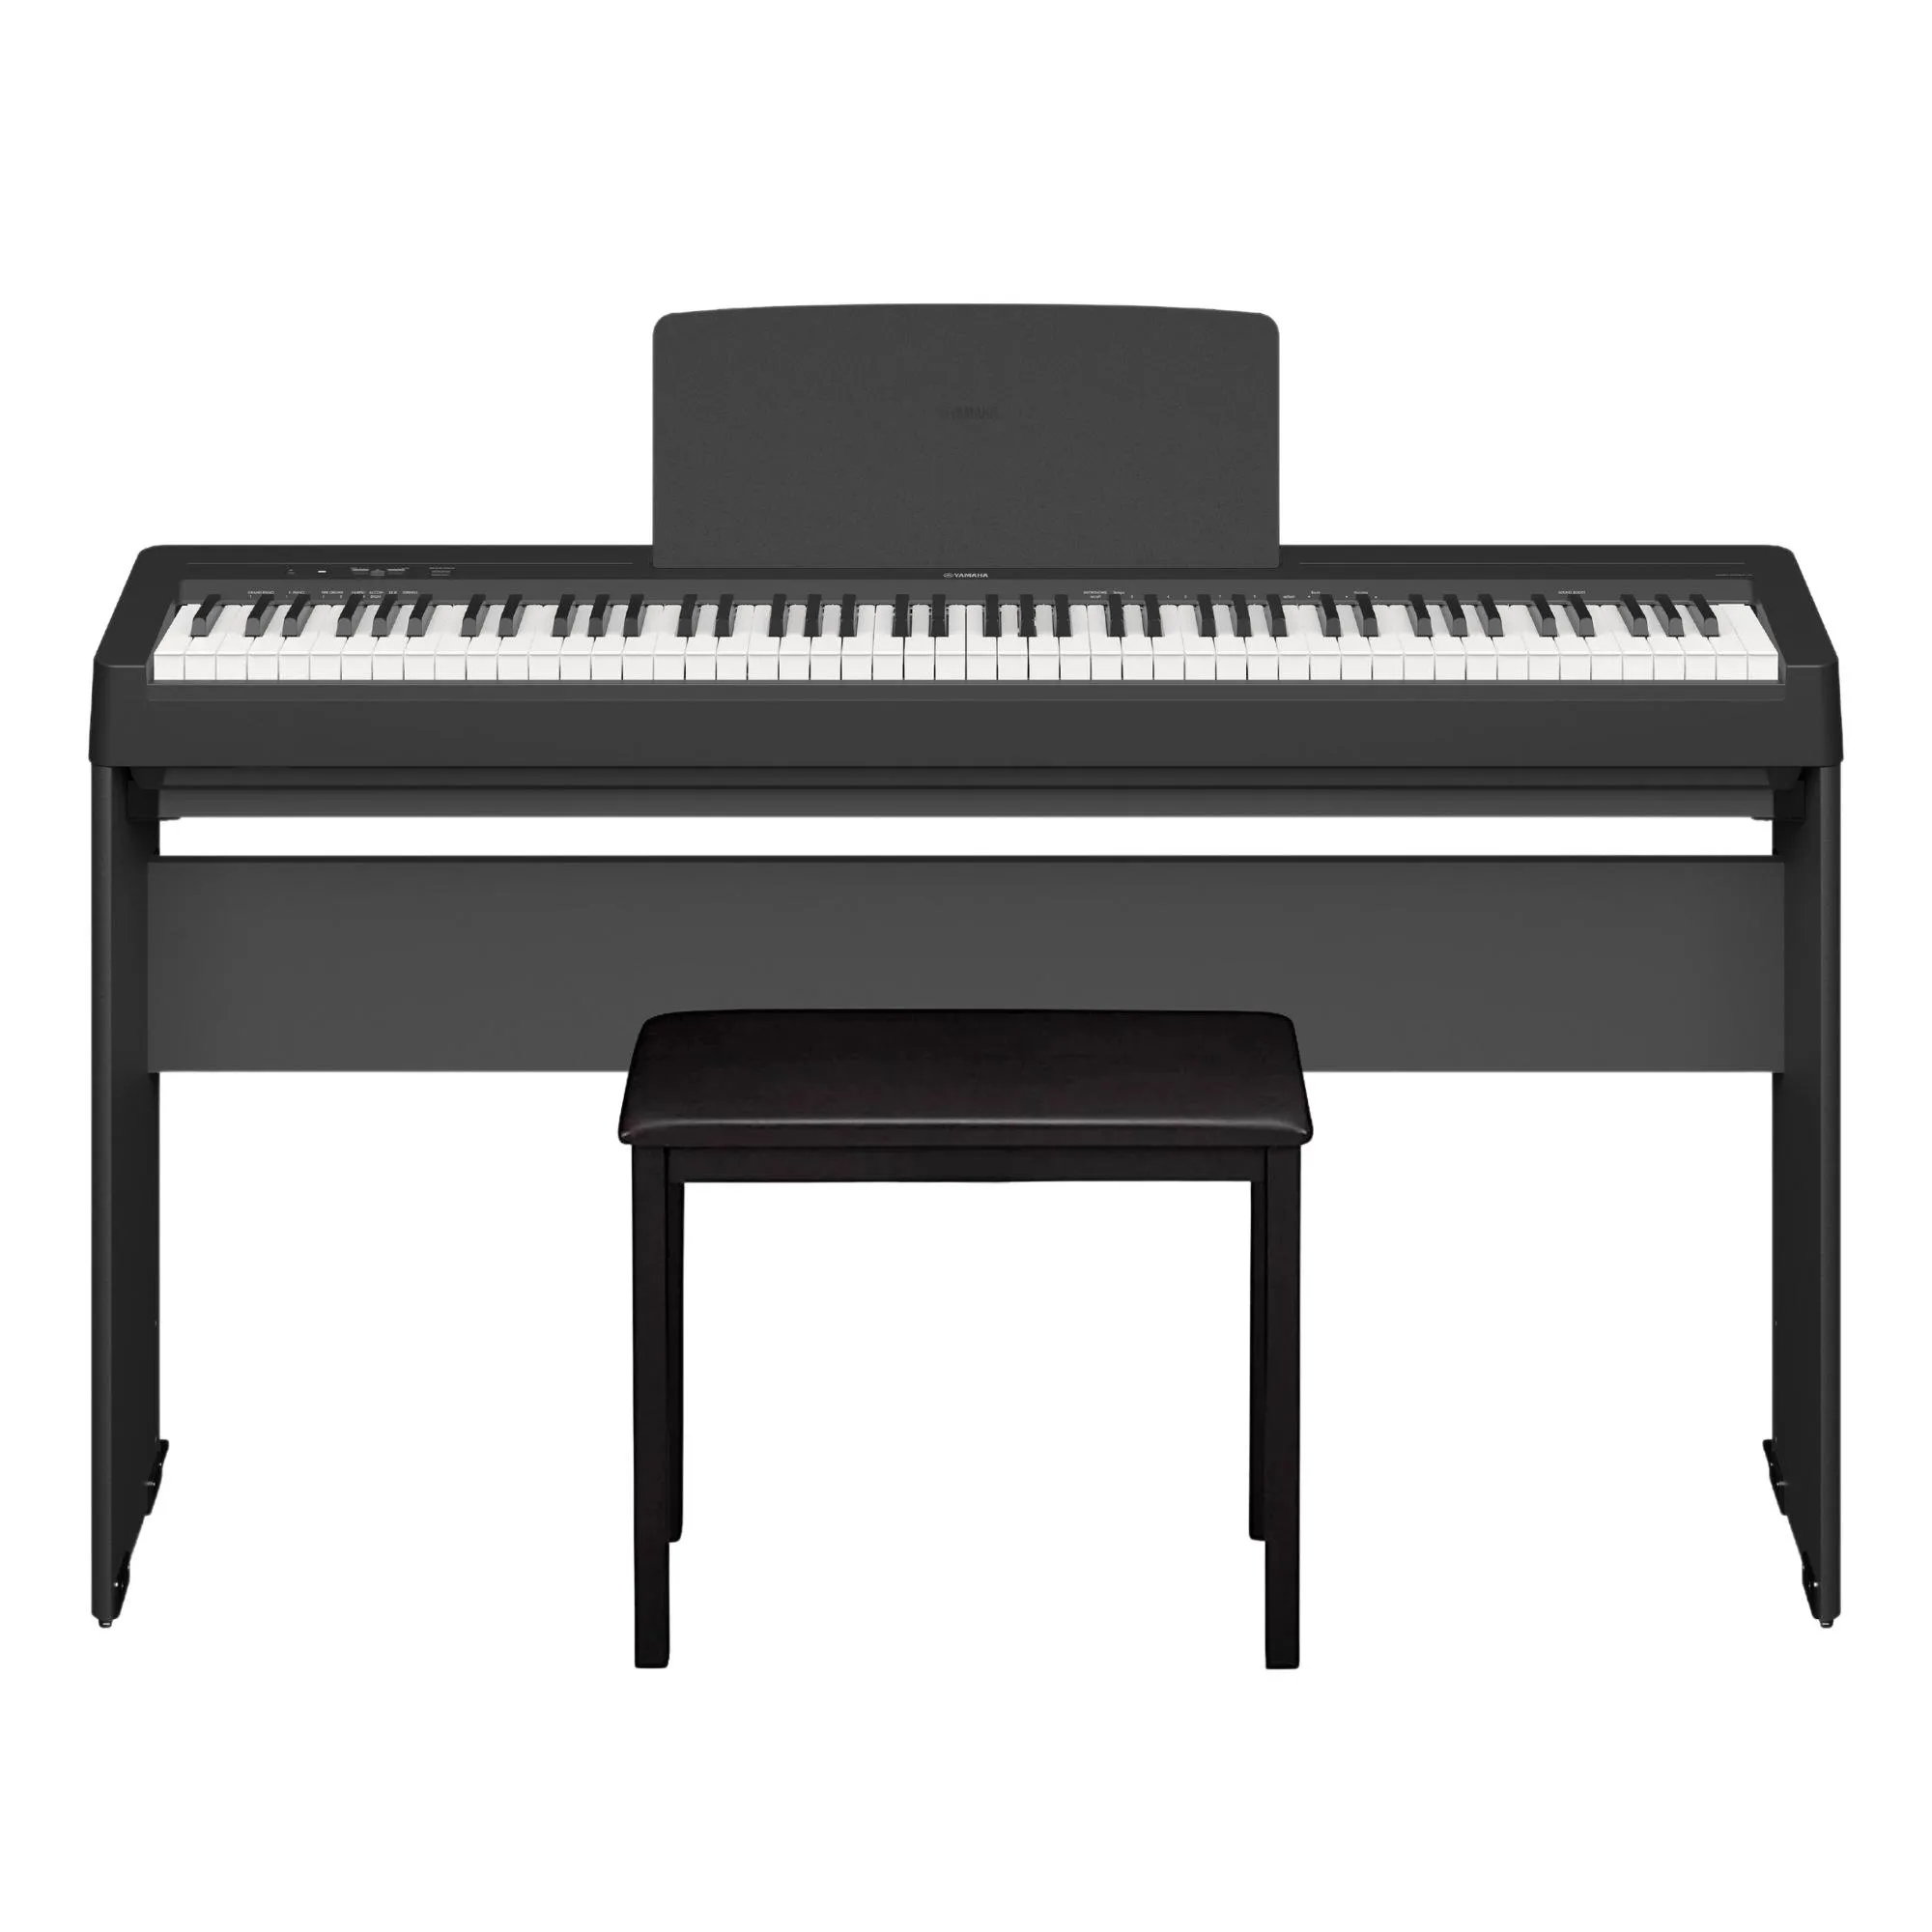 Kit Piano Yamaha P145 + Acessórios + Estante por 4.941,00 à vista no boleto/pix ou parcele em até 12x sem juros. Compre na loja Mundomax!